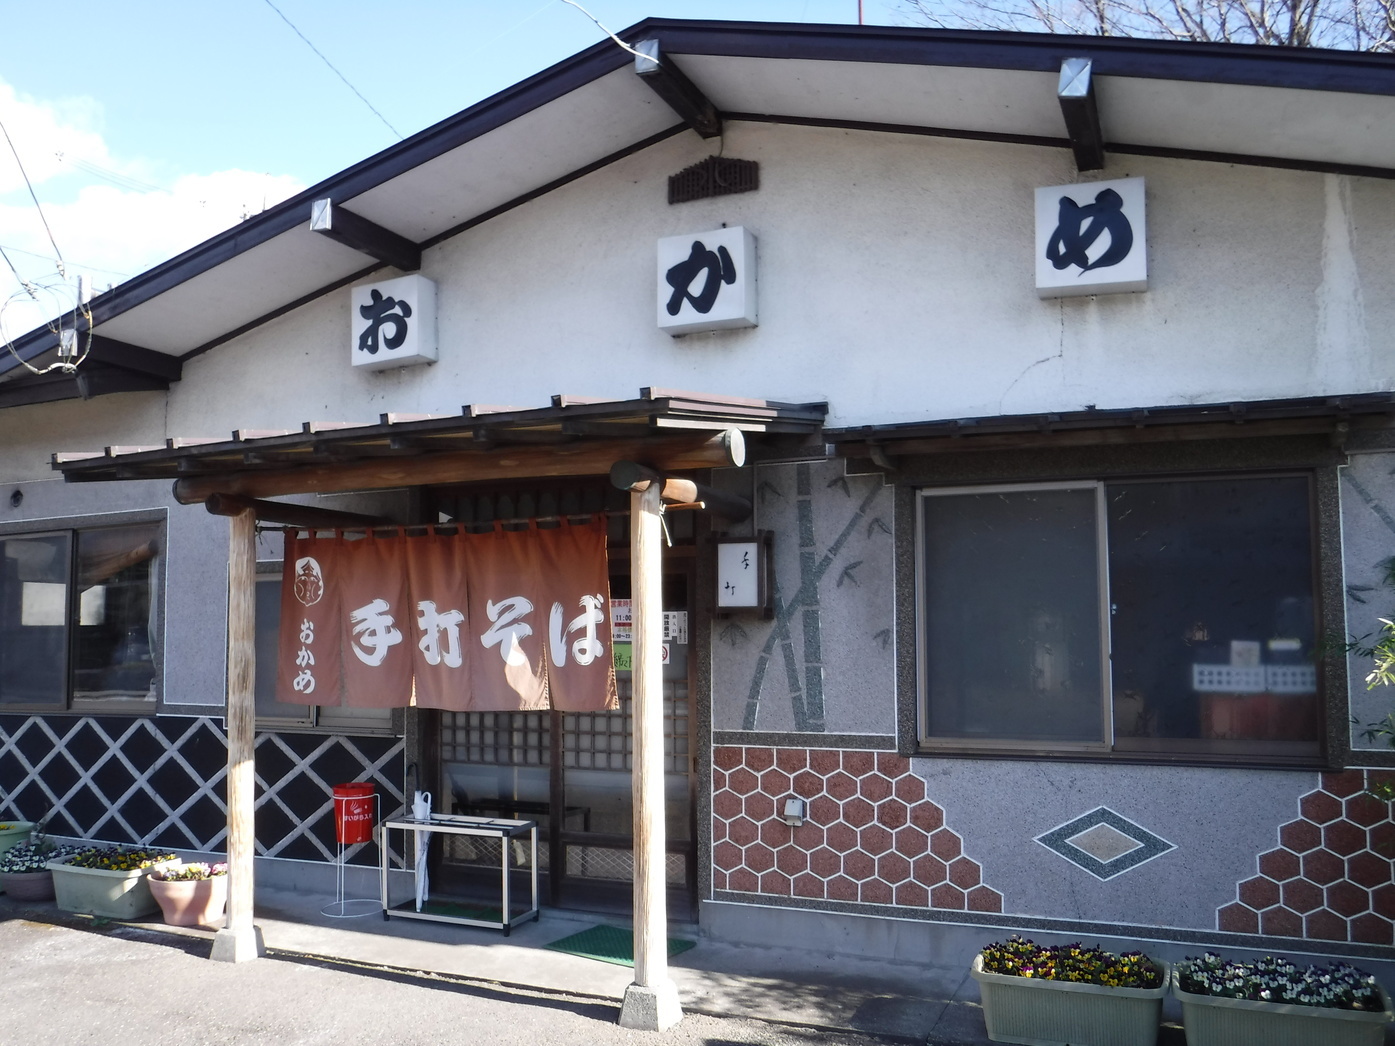 日光 鬼怒川温泉の自由な宿 スクウェアヒルズ 公式サイト 周辺の飲食店